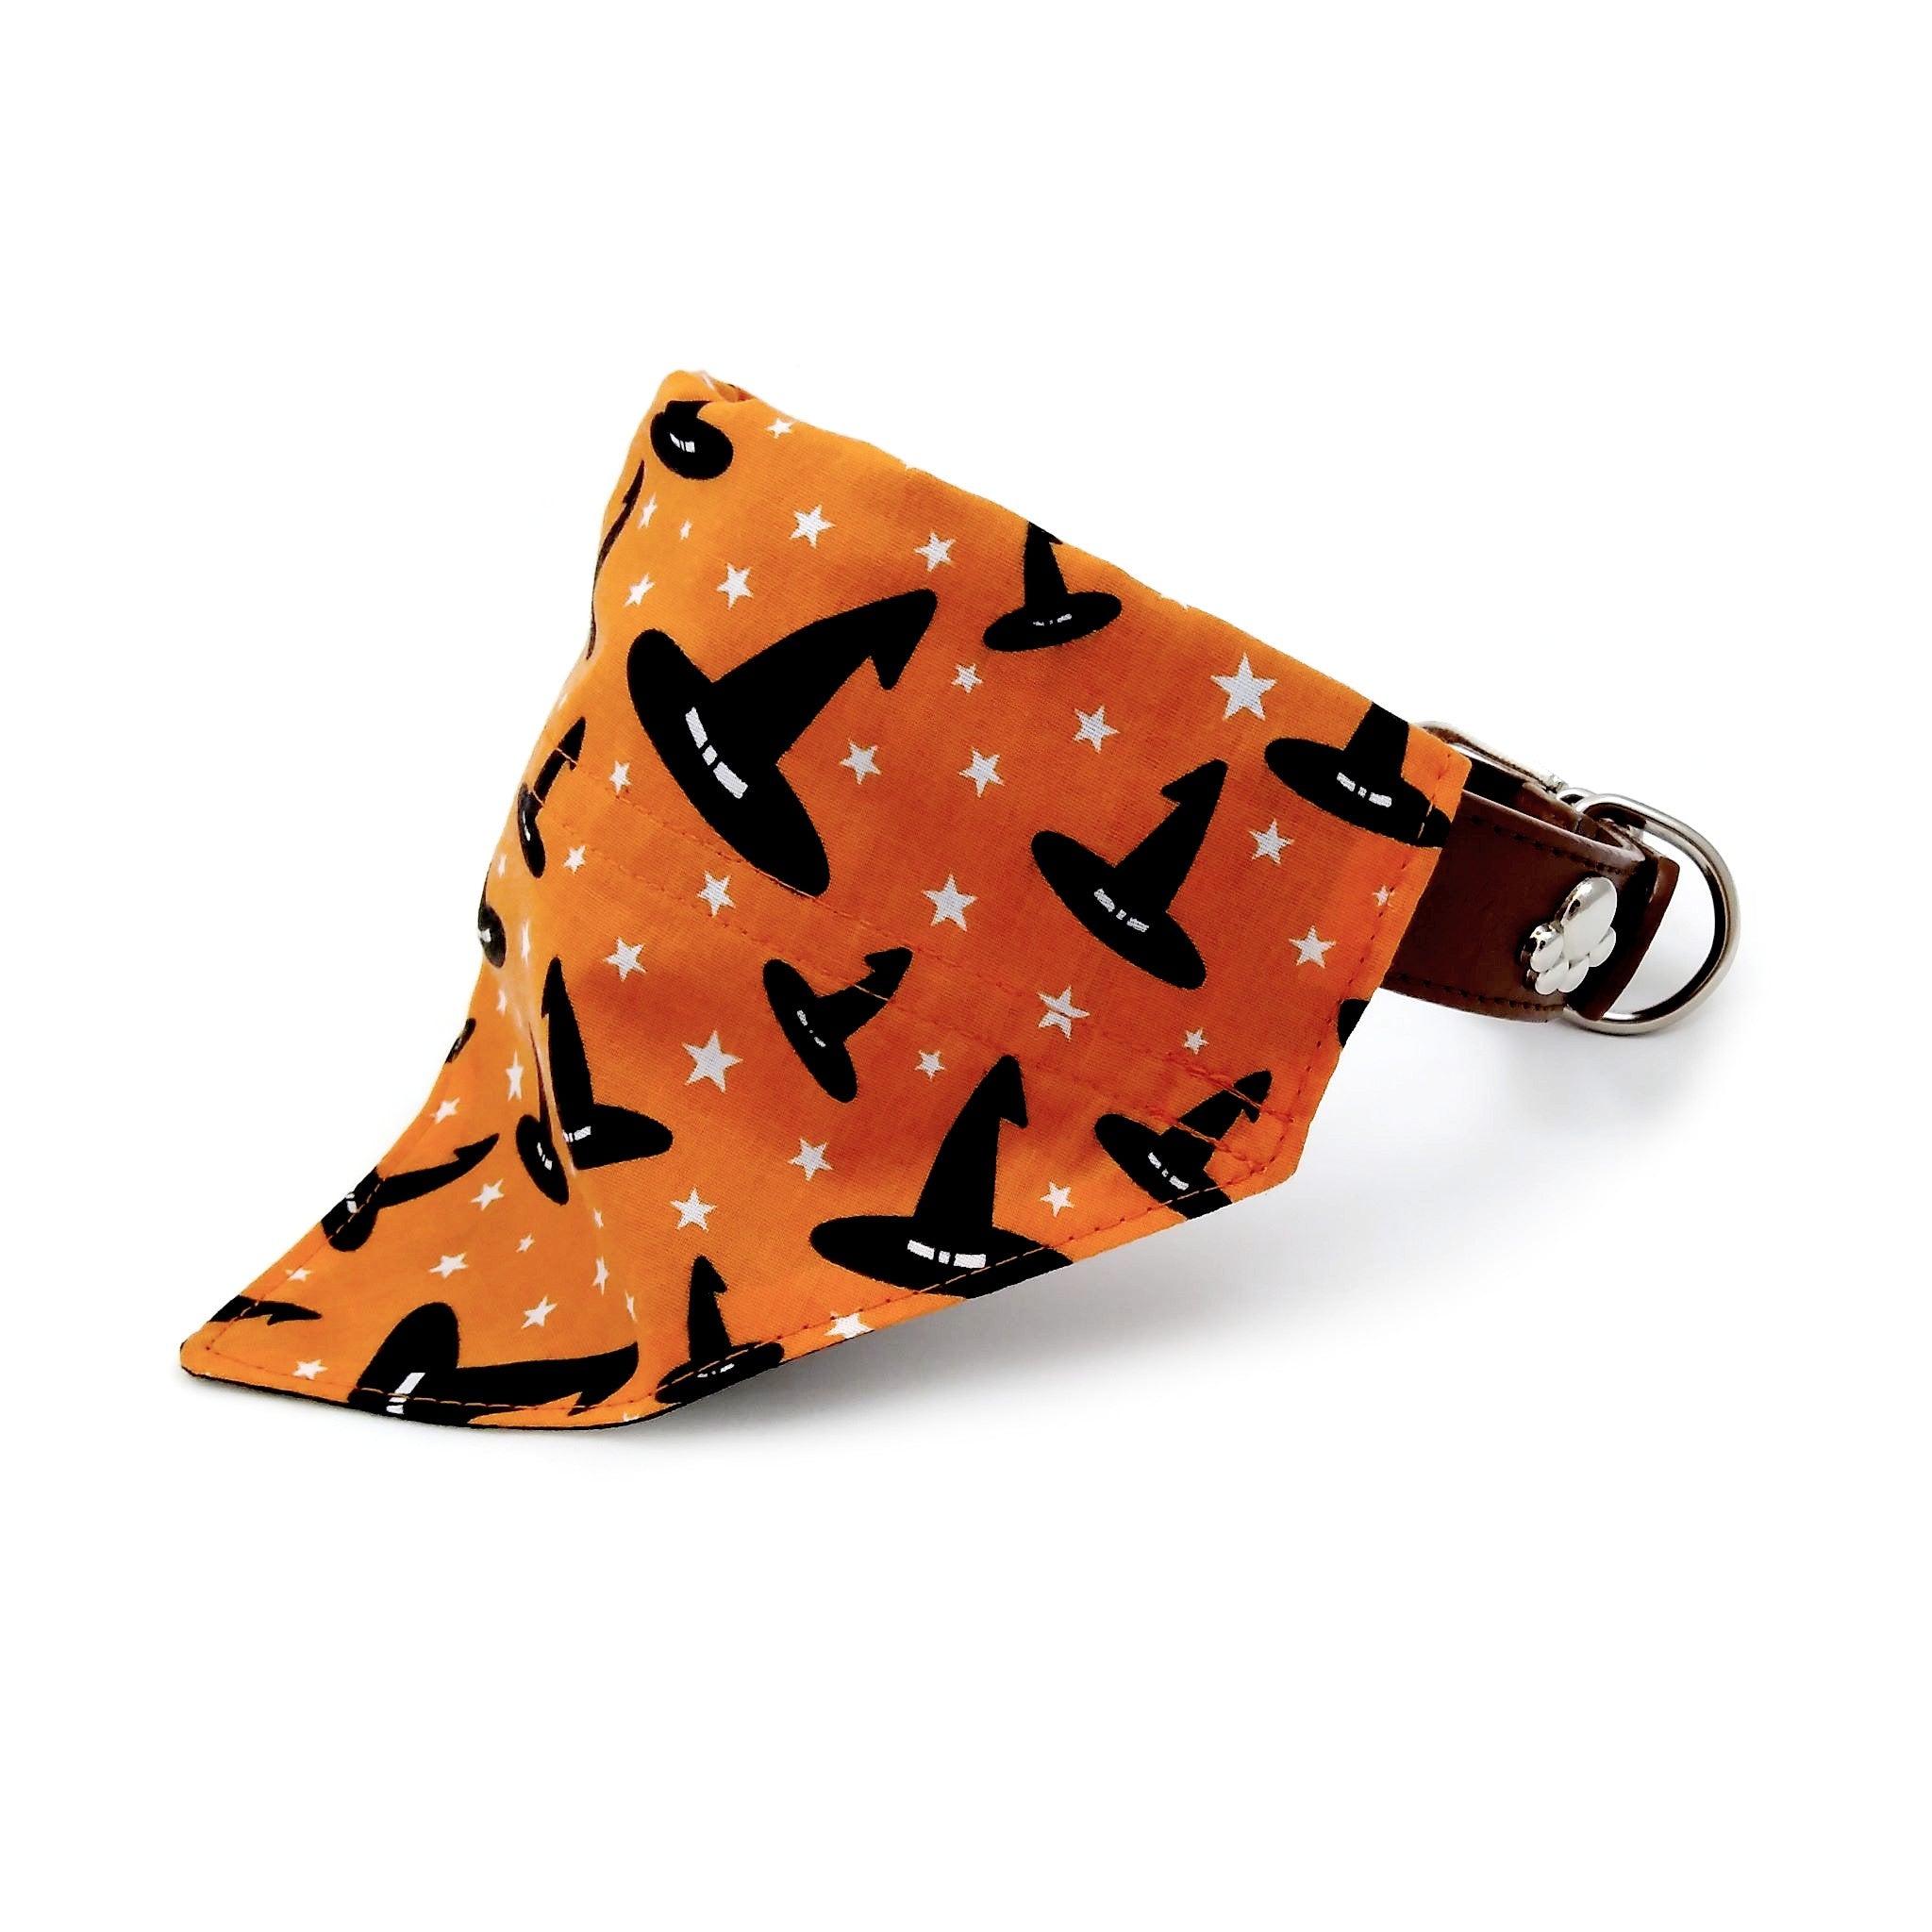 Orange and black witches hats dog bandana on collar